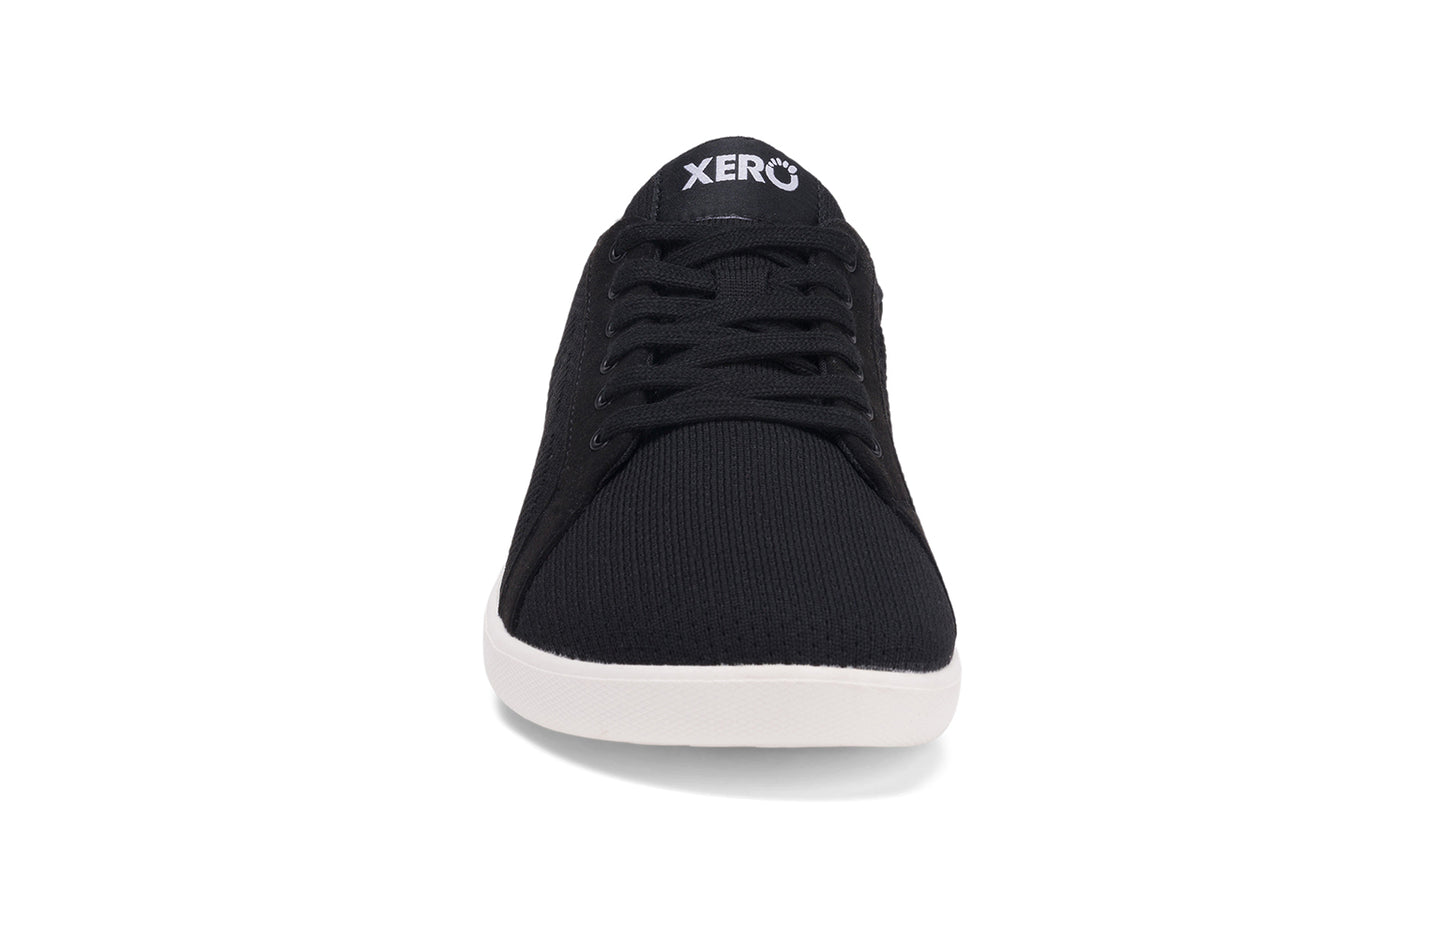 Xero Shoes - Dillon - Black - Men's